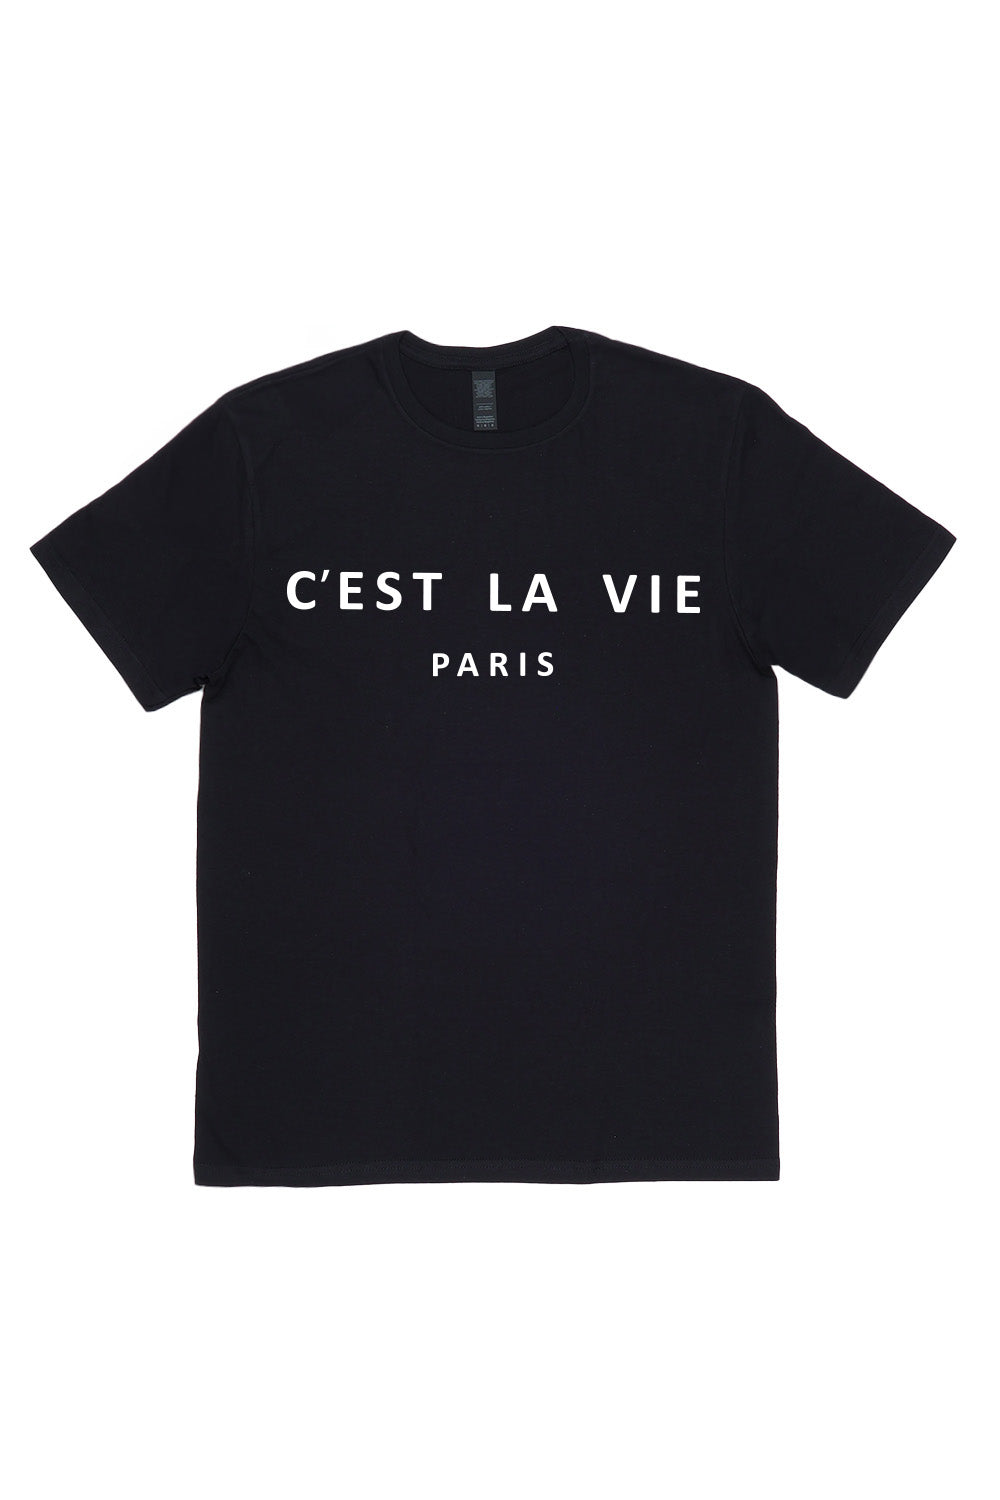 C'est La Vie Paris Slogan T-Shirt In Black (Custom Pack)